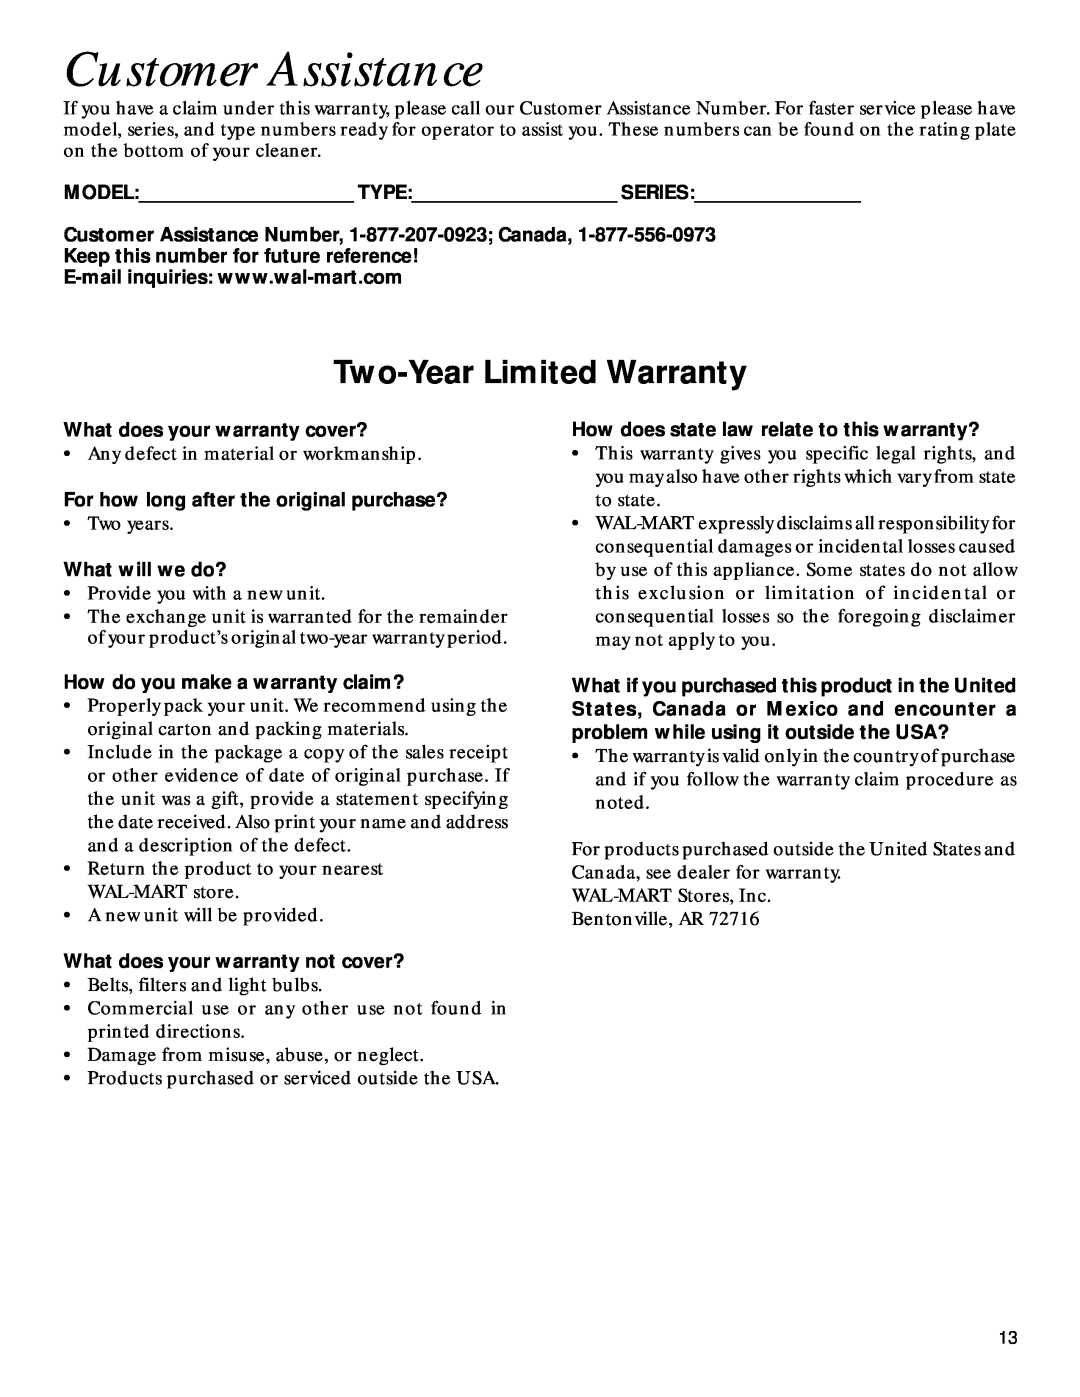 GE 71937, 106766 warranty Customer Assistance, Two-YearLimited Warranty 